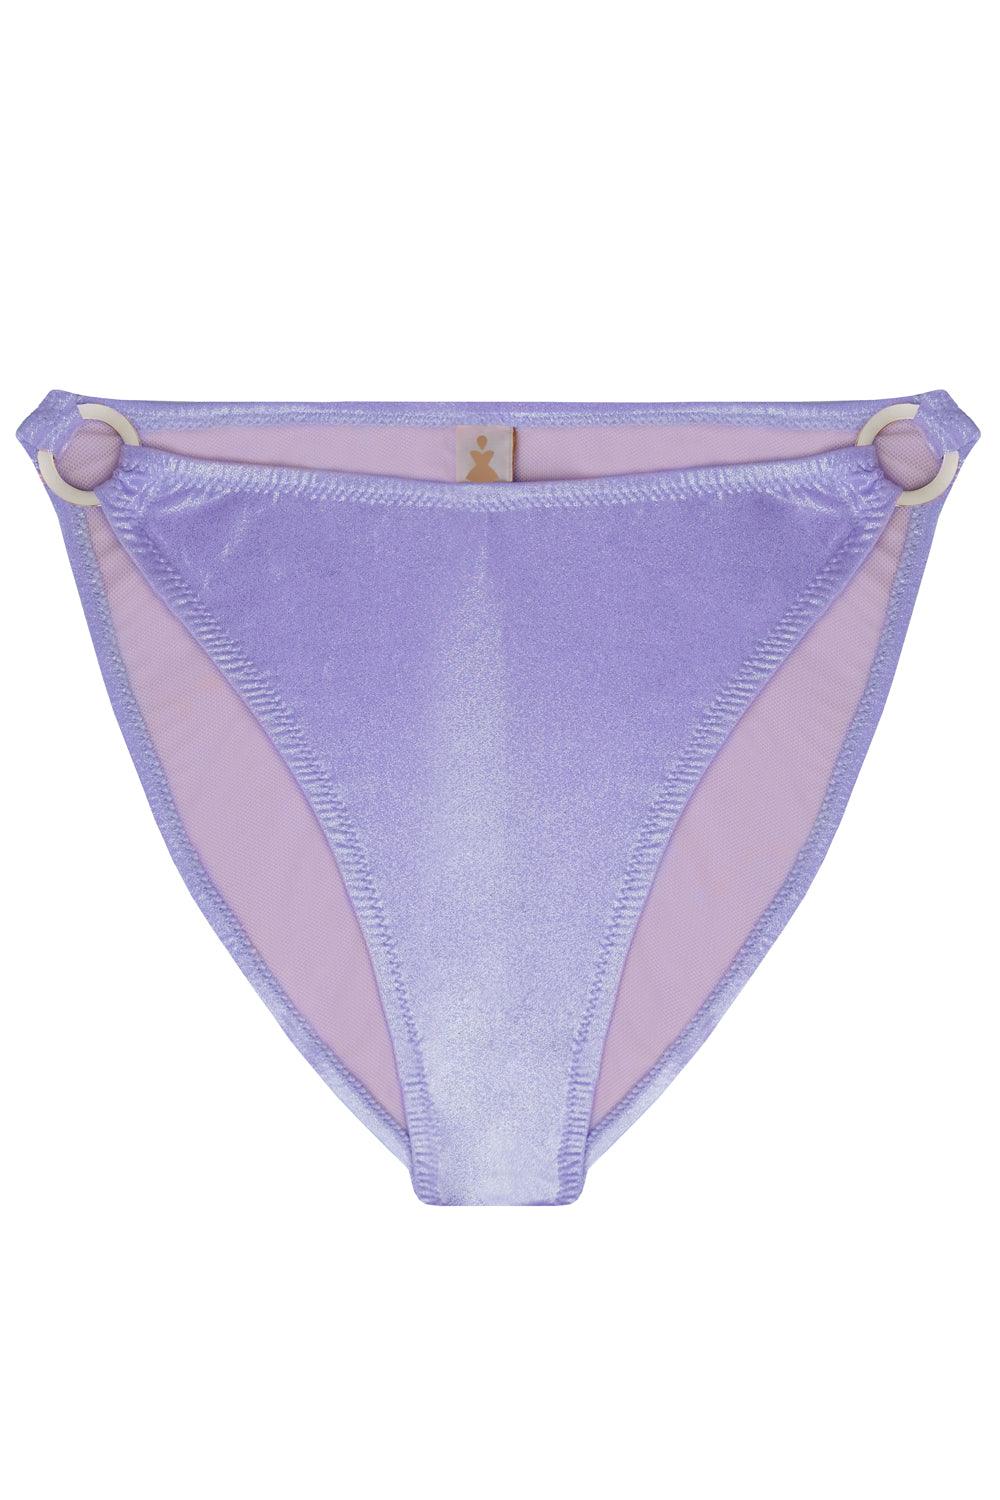 Titaniya Lilac high waisted bikini bottom - Bikini bottom by yesUndress. Shop on yesUndress